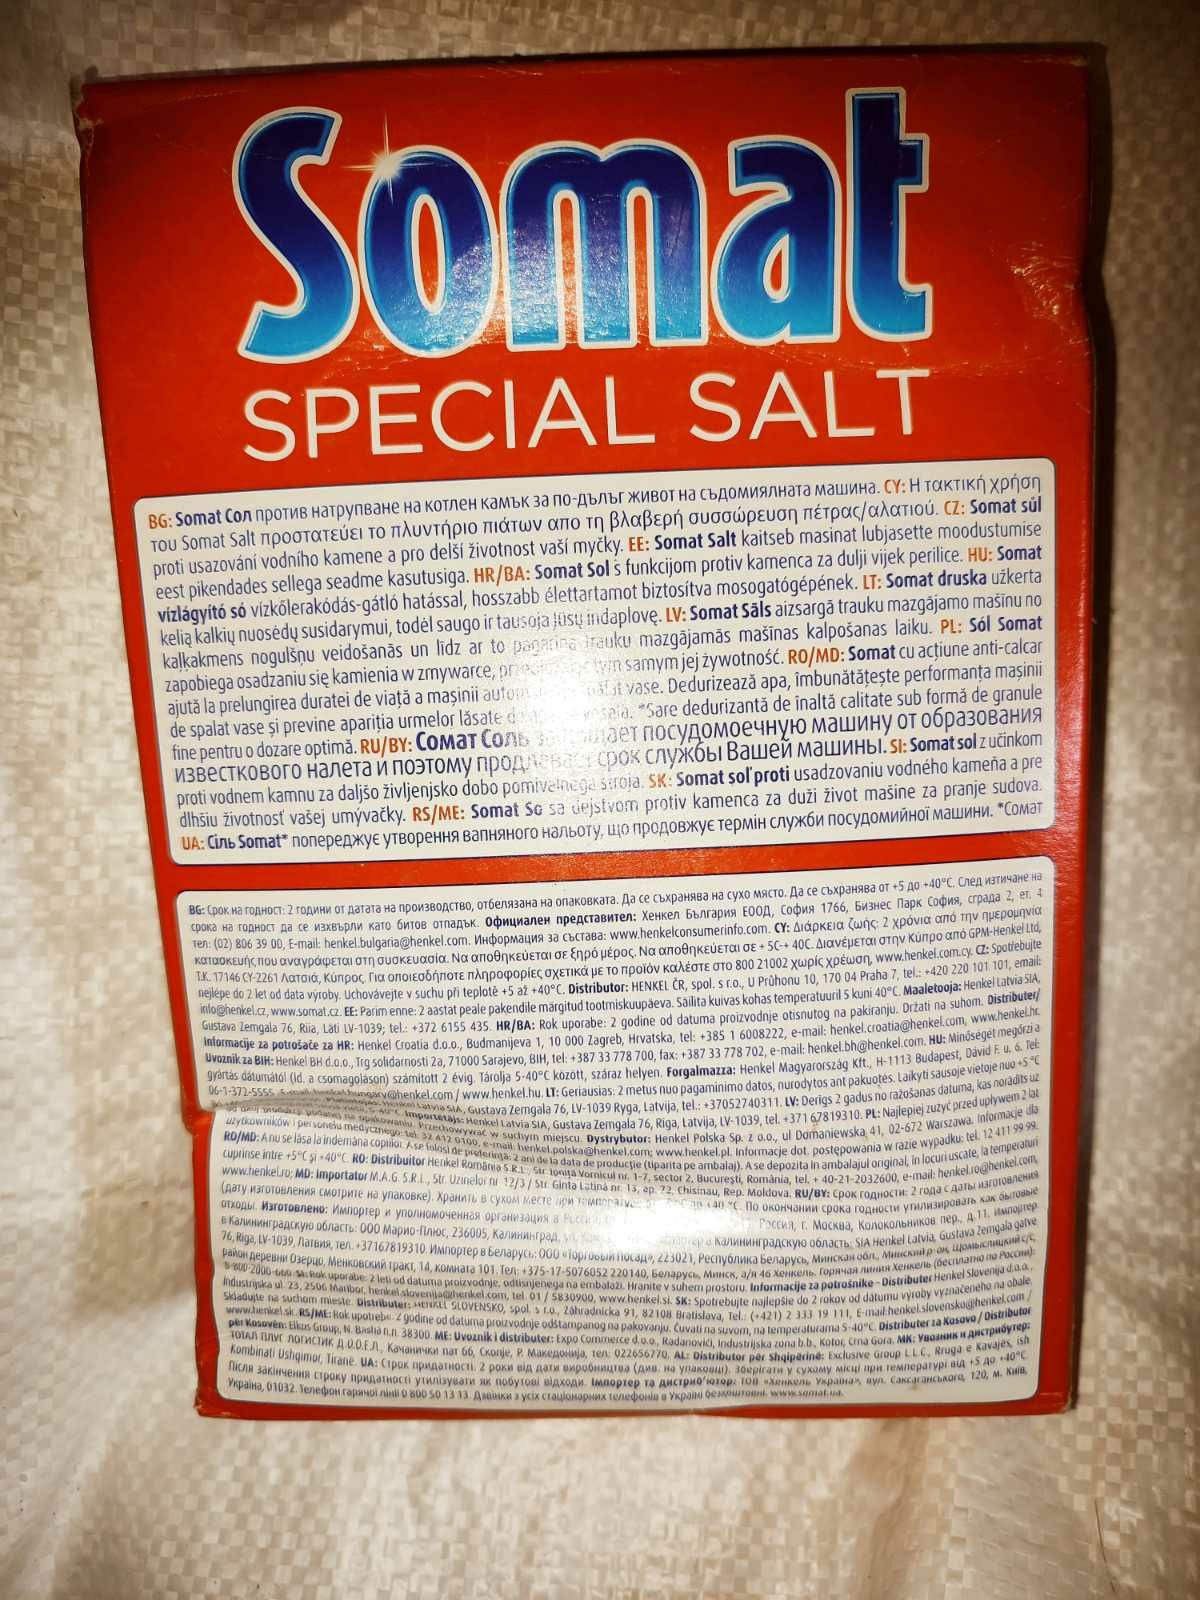 Соль для посудомоечных машин Somat 1,5кг Есть Опт